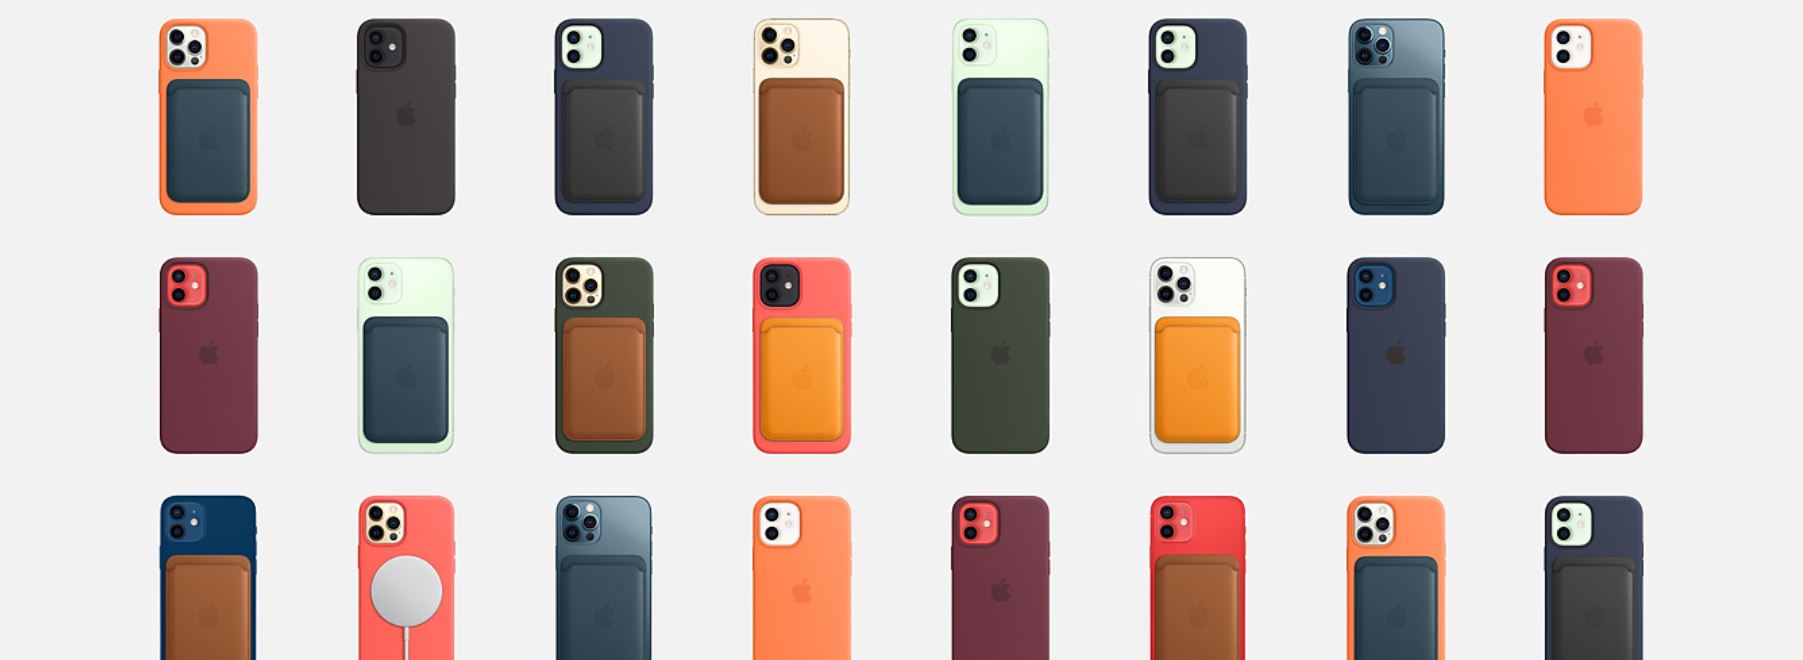 כיסוי סיליקון לאייפון 12 / 12 פרו עם iPhone 12 / 12 PRO MagSafe - בצבעים איכות